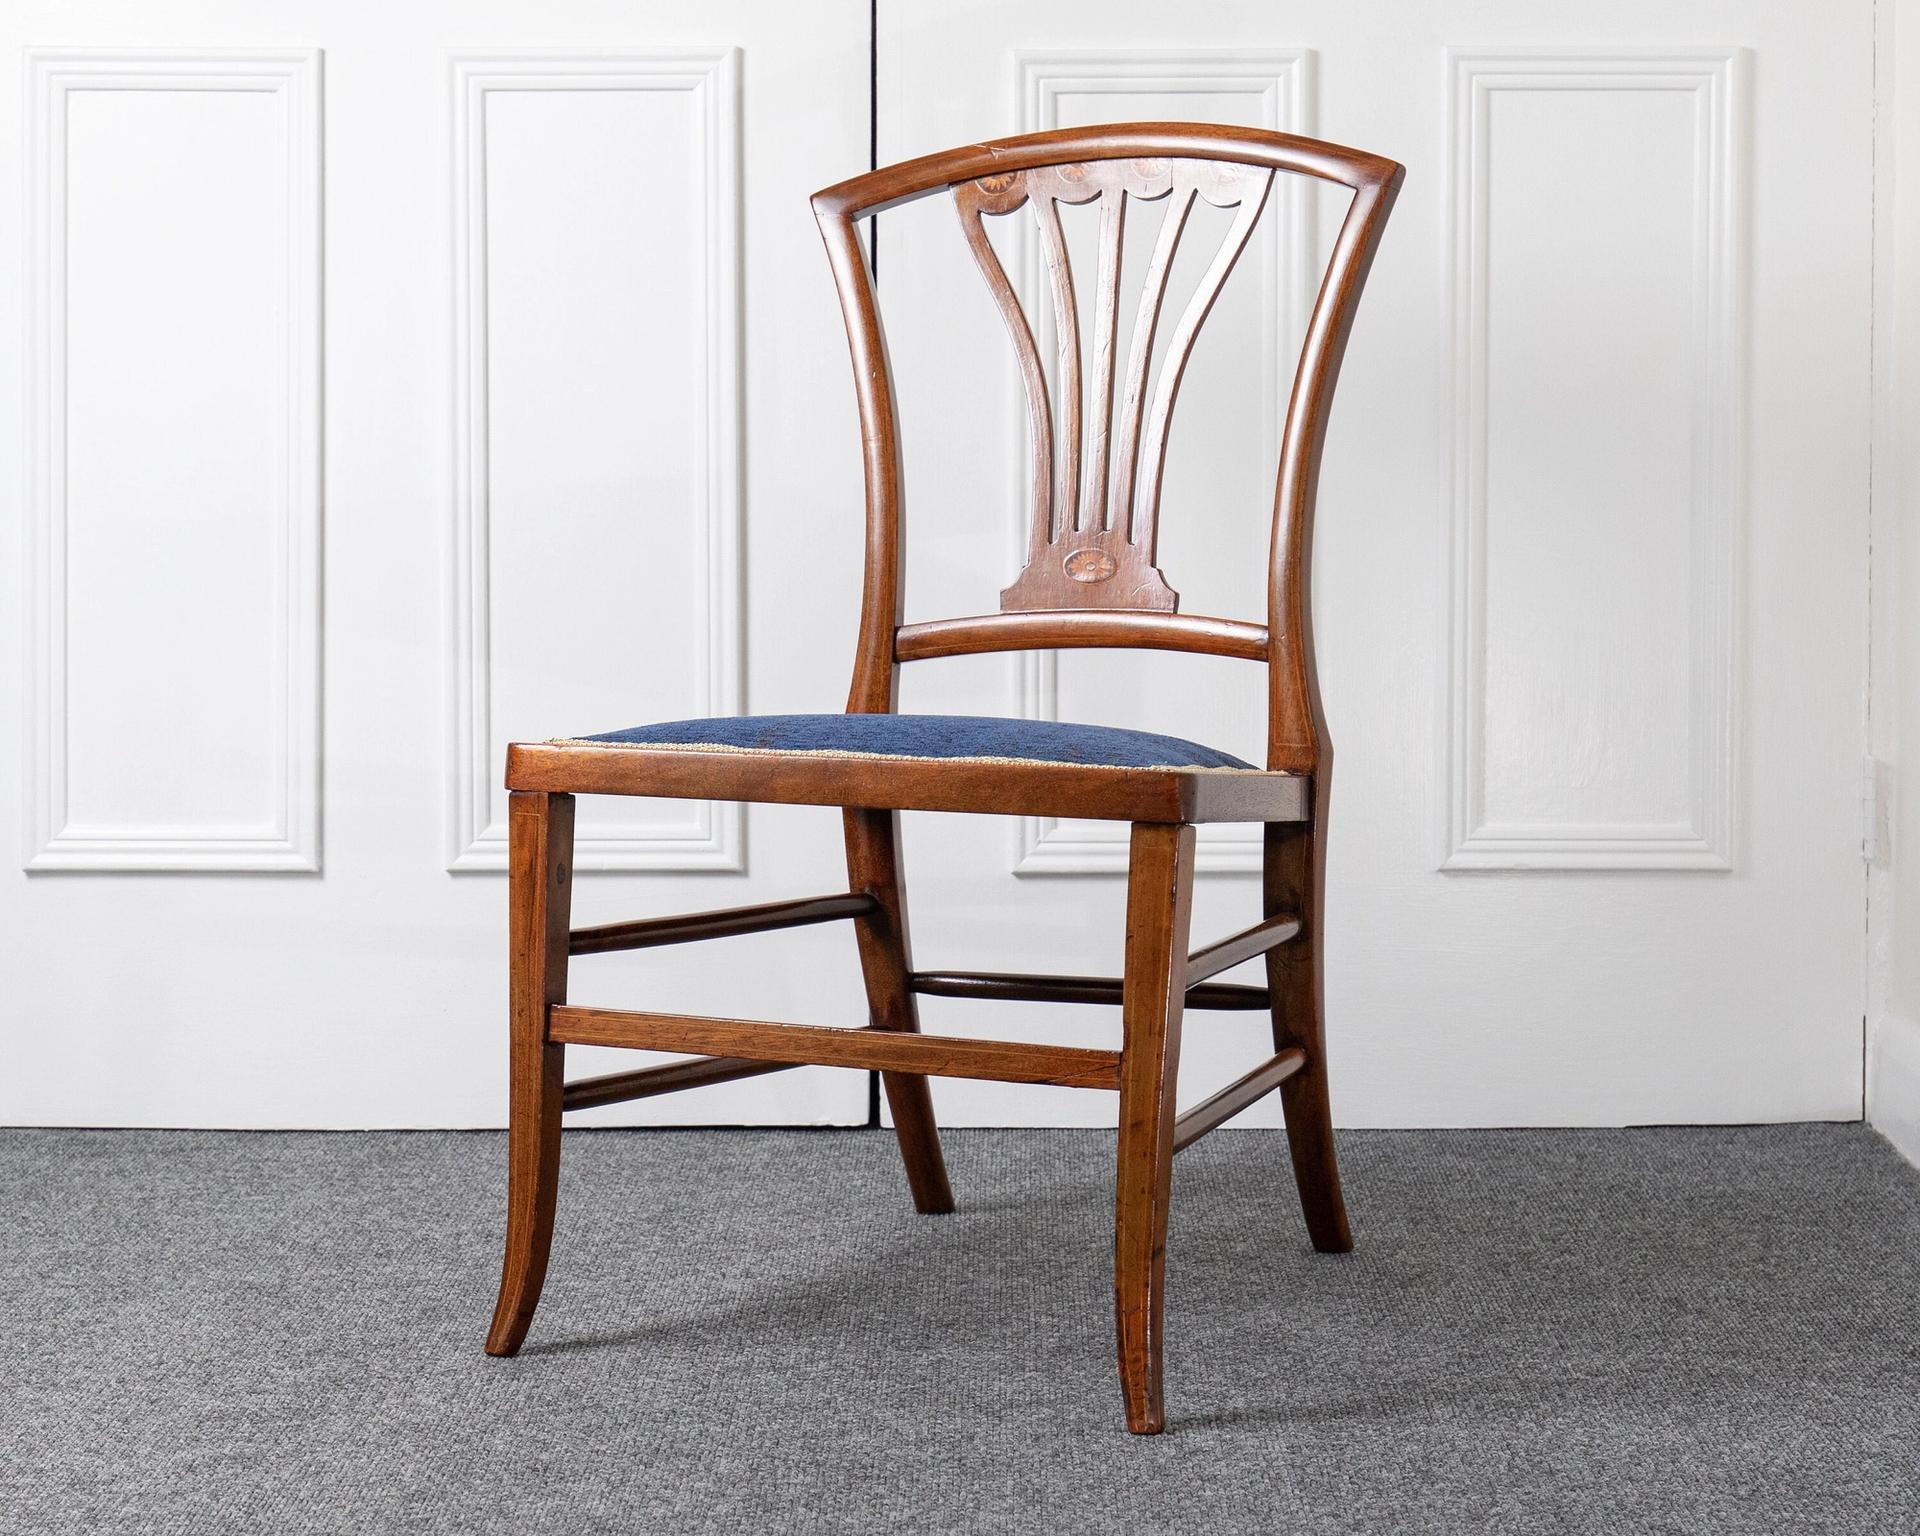 Decorative Antique Inlaid Chair